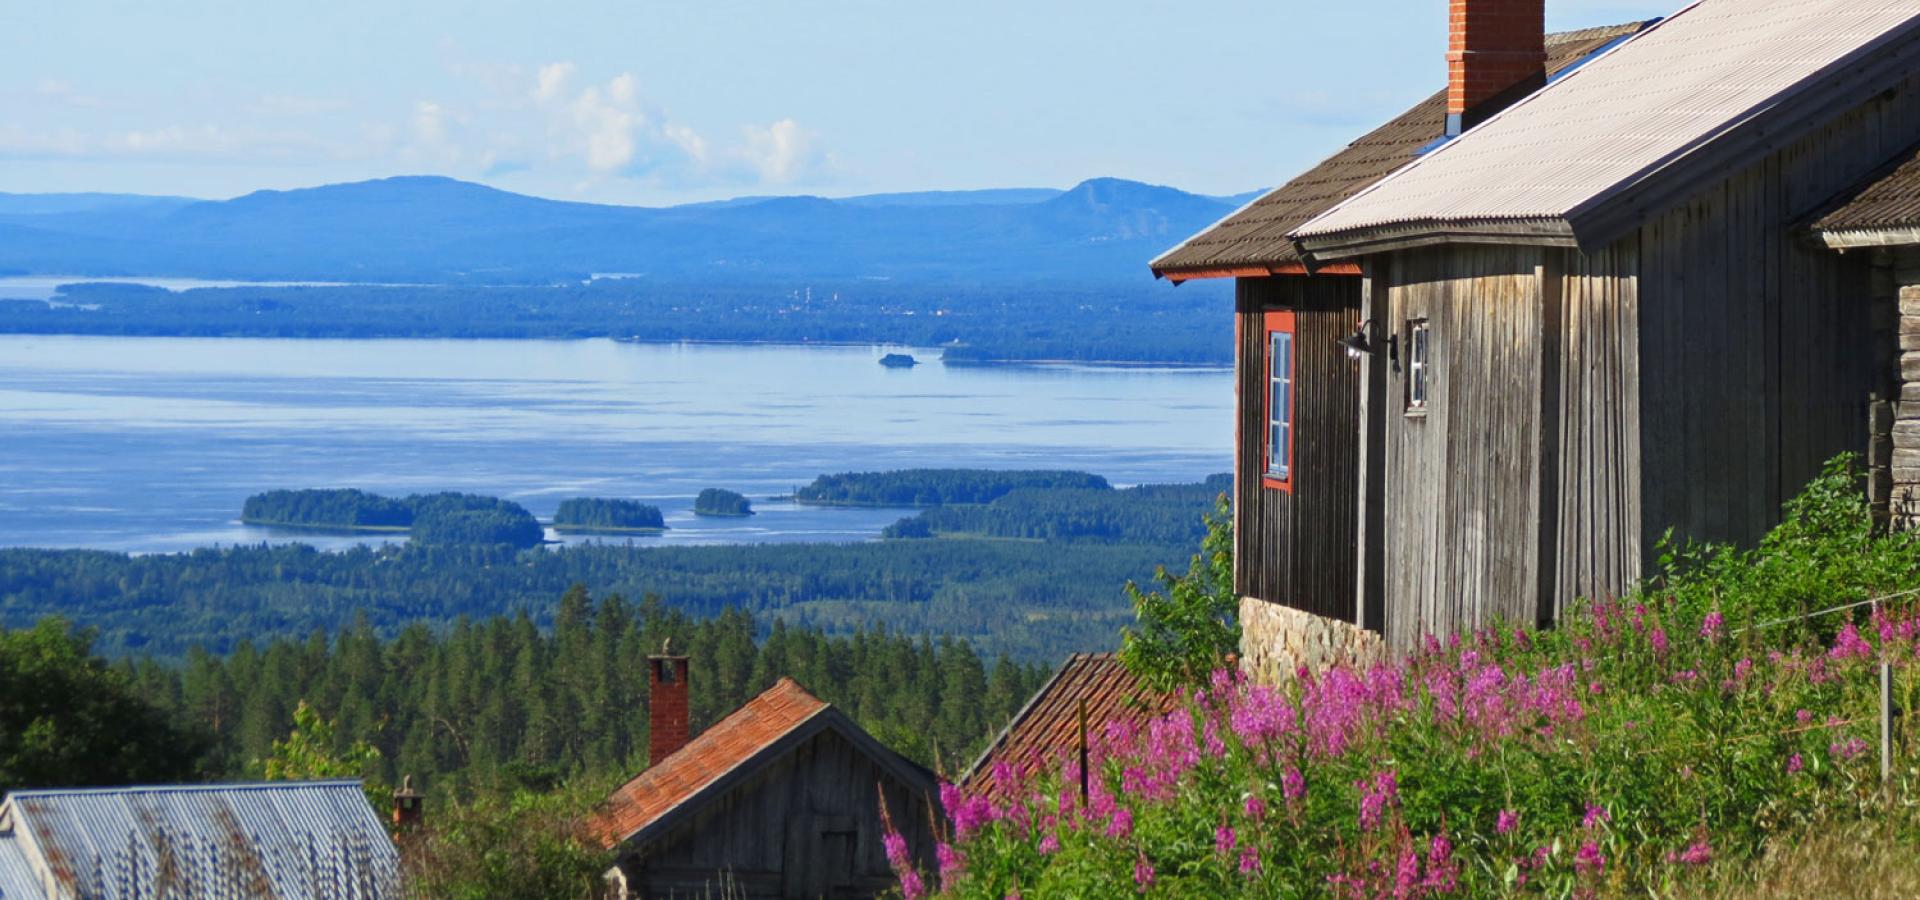 Utsikt över Fryksås från hotellet och gästviveriet.